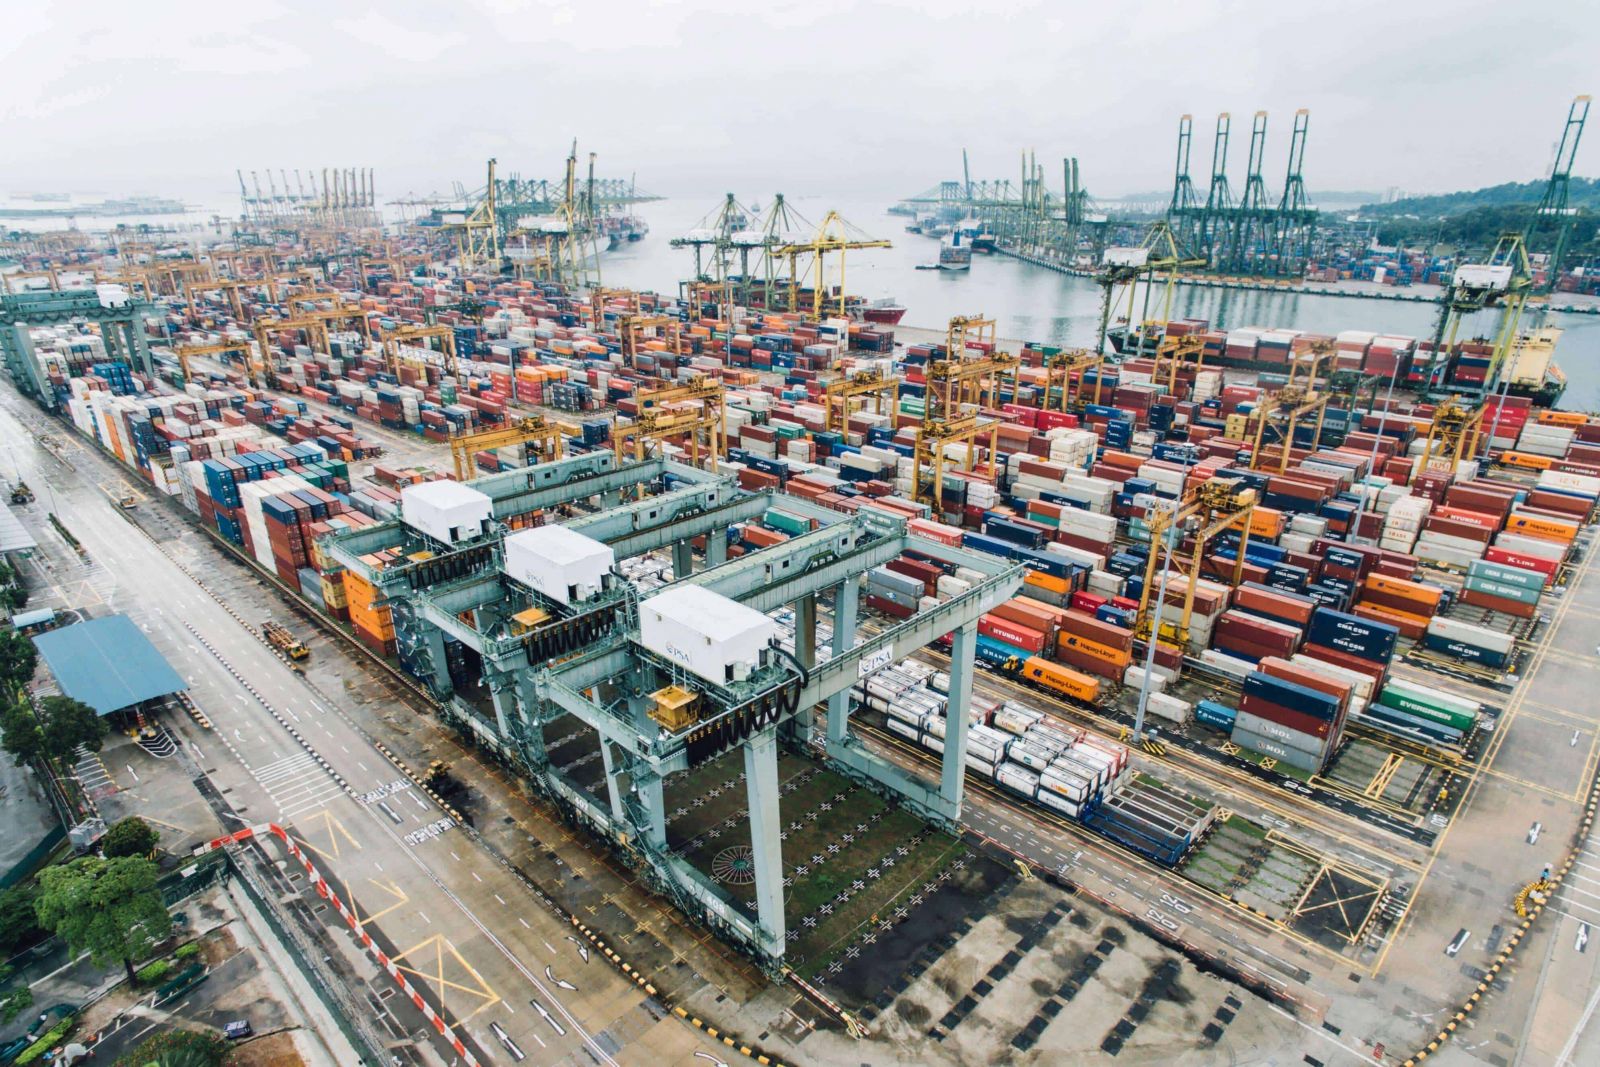 tình trạng thiếu container và thiếu tàu ở châu Á khiến giá vận tải tăng cao